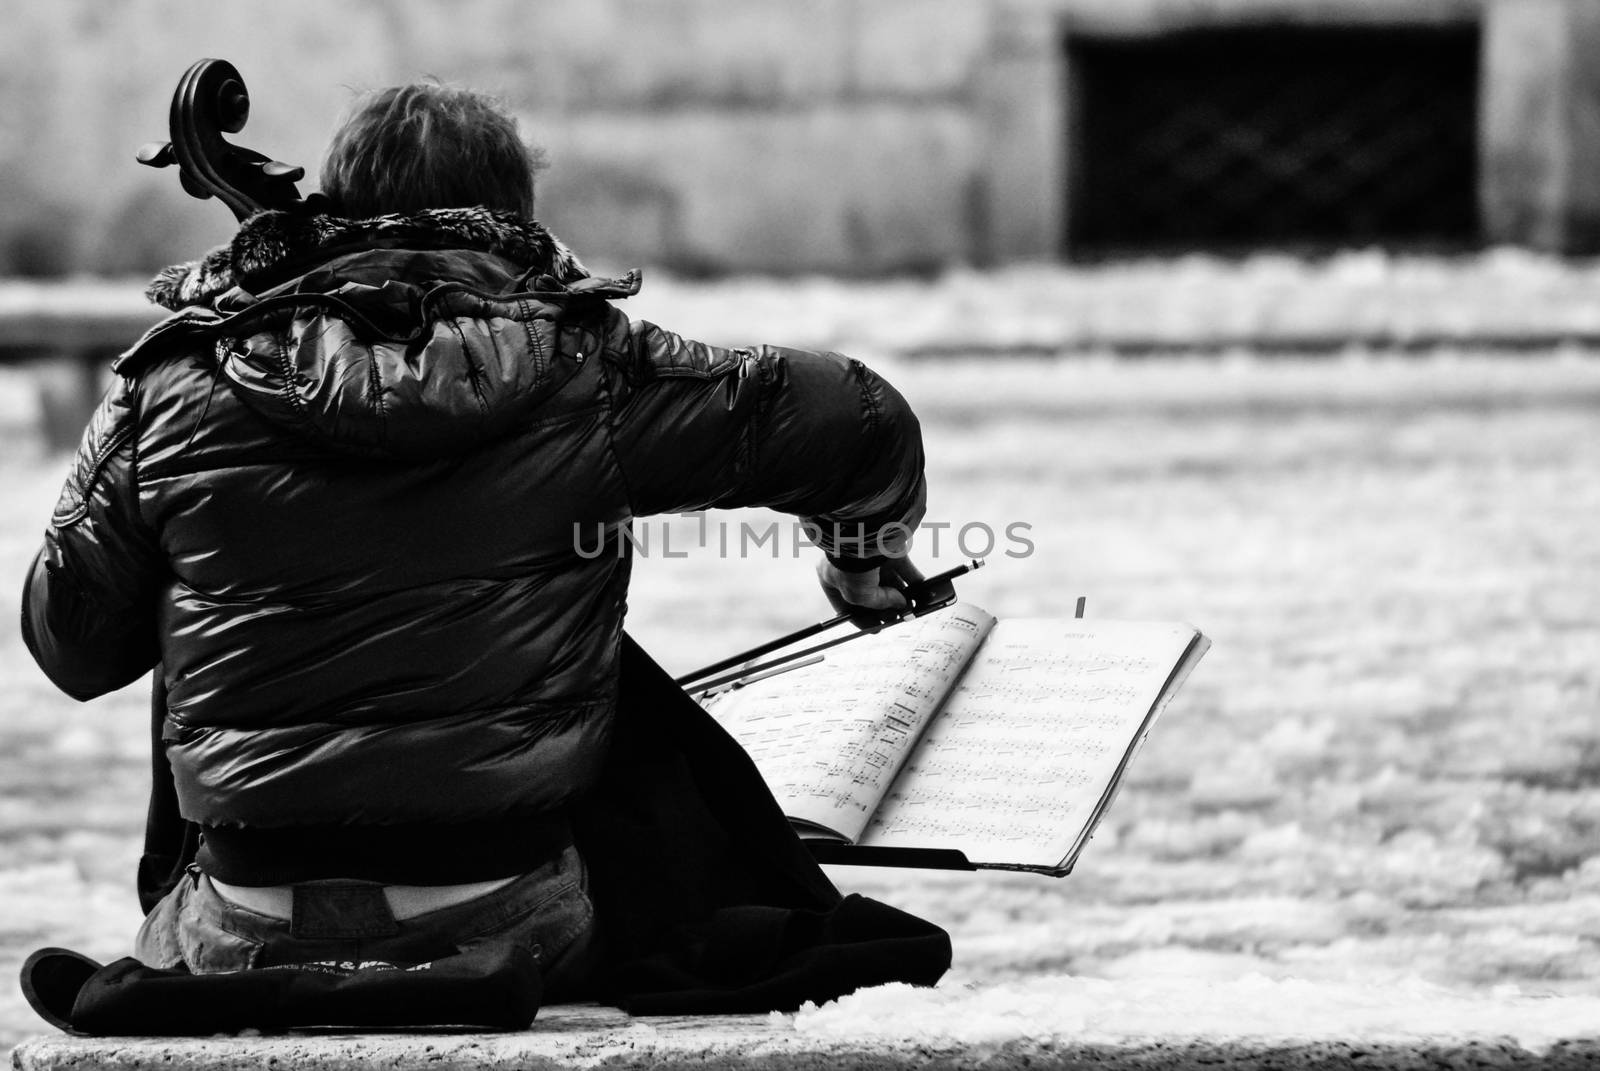 Music in the snow by rarrarorro